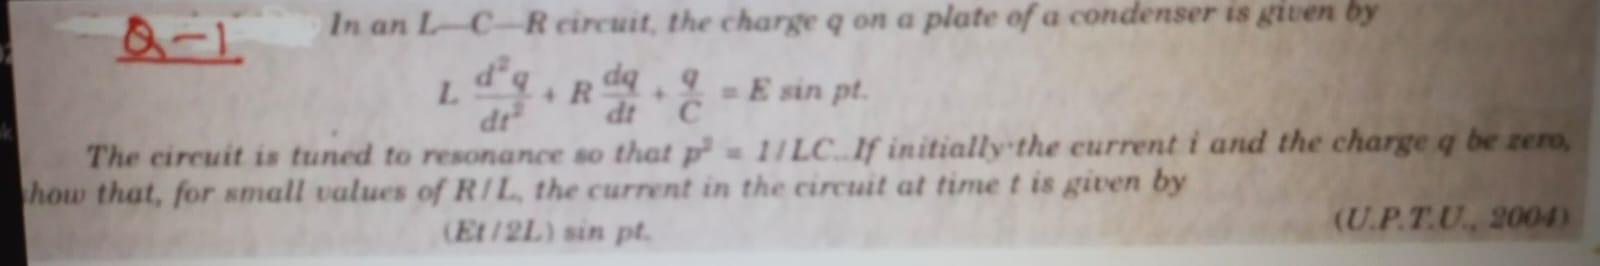 da B-1 In an L-C-R circuit, the charge q on a plate of a condenser is given by L +R da. E sin pt. dr dt С The circuit is tune